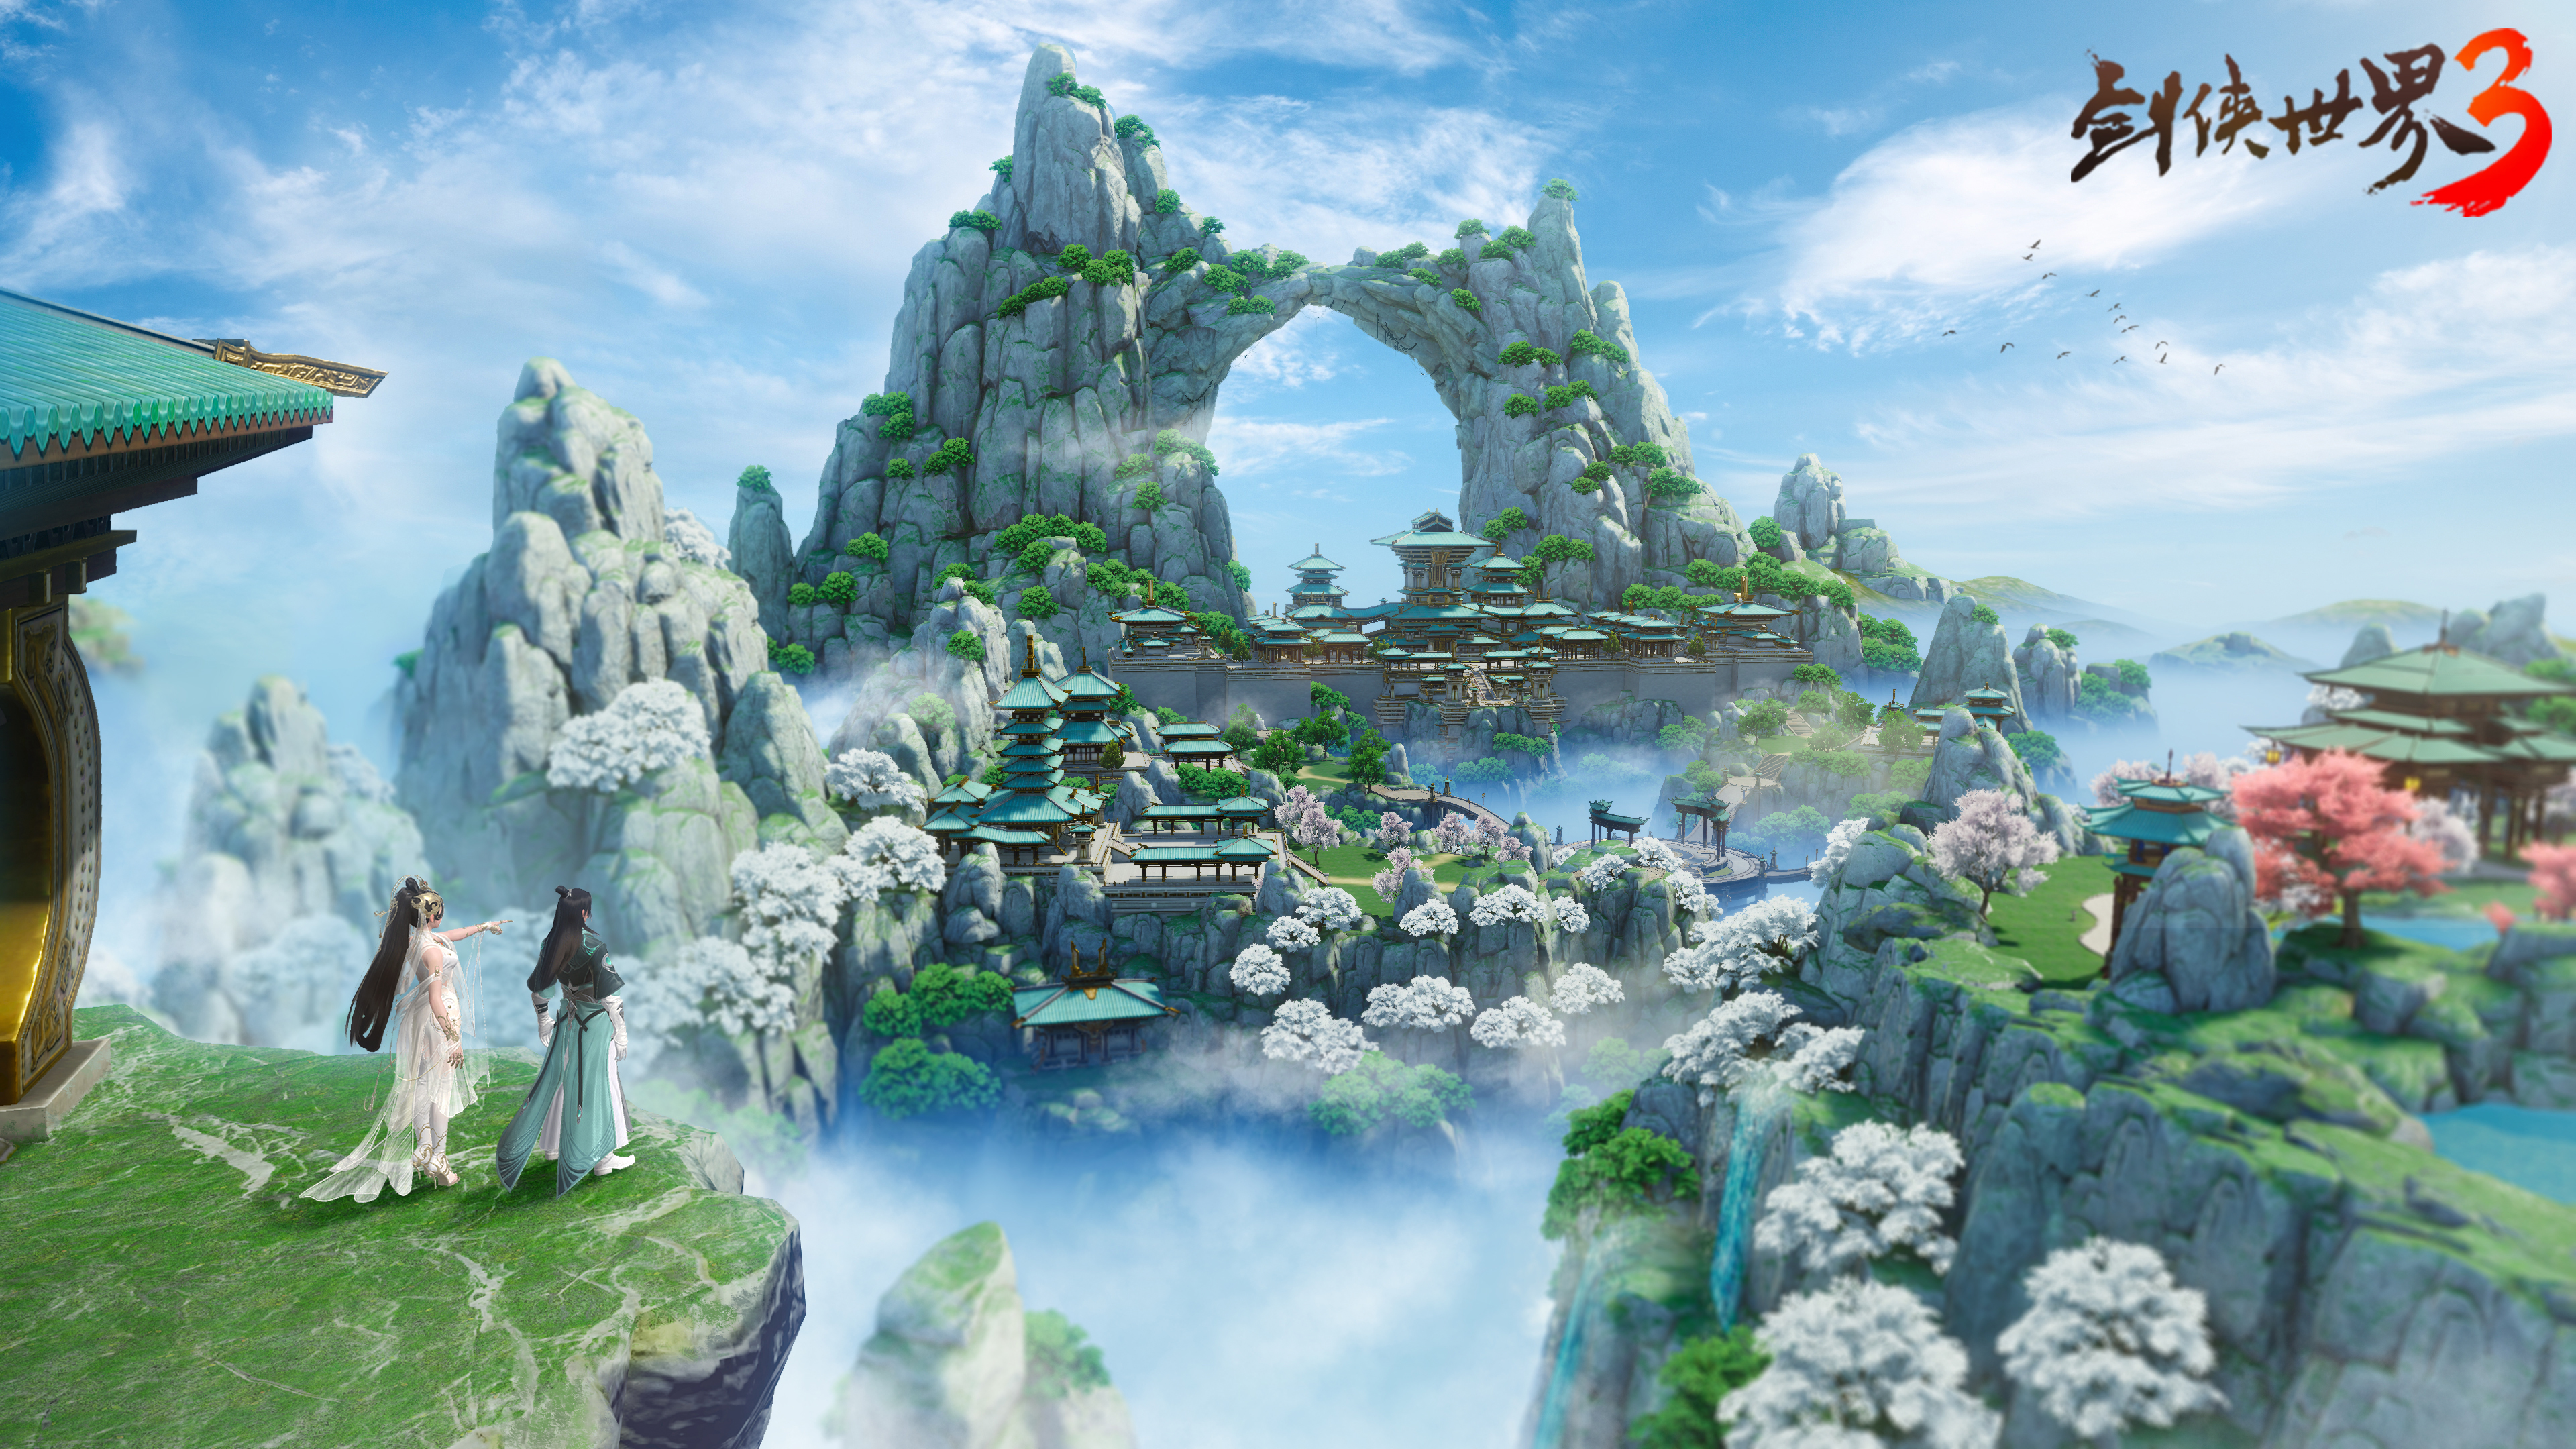 踏青出游季，来《剑侠世界3》云看江湖美景